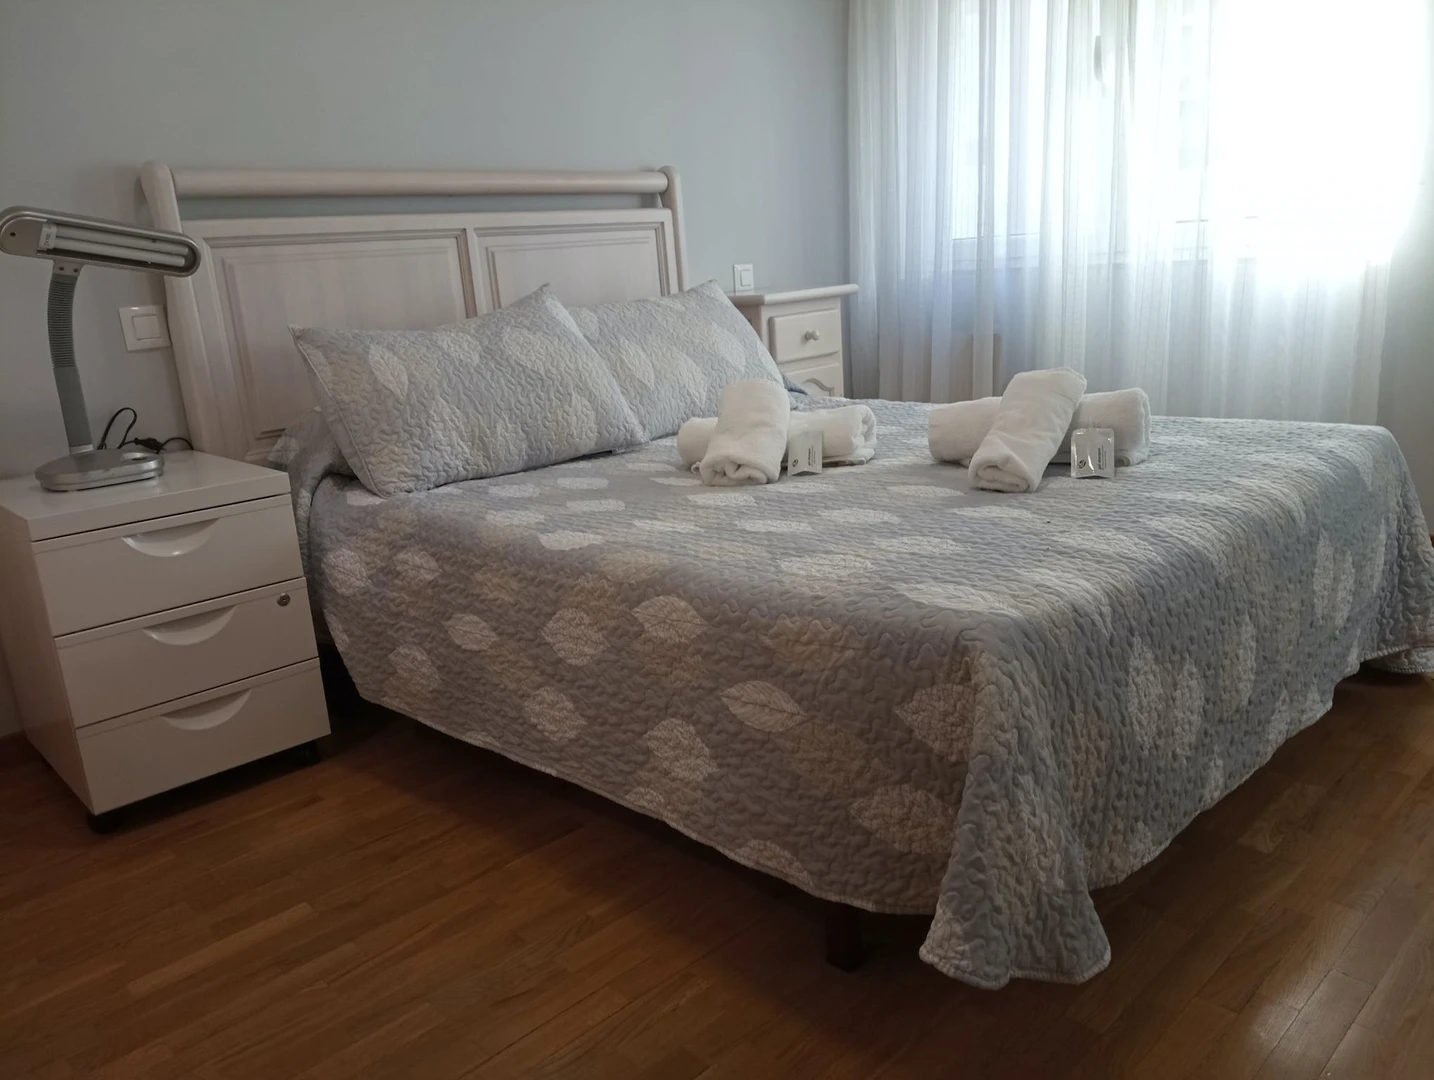 Alojamiento de 2 dormitorios en Oviedo